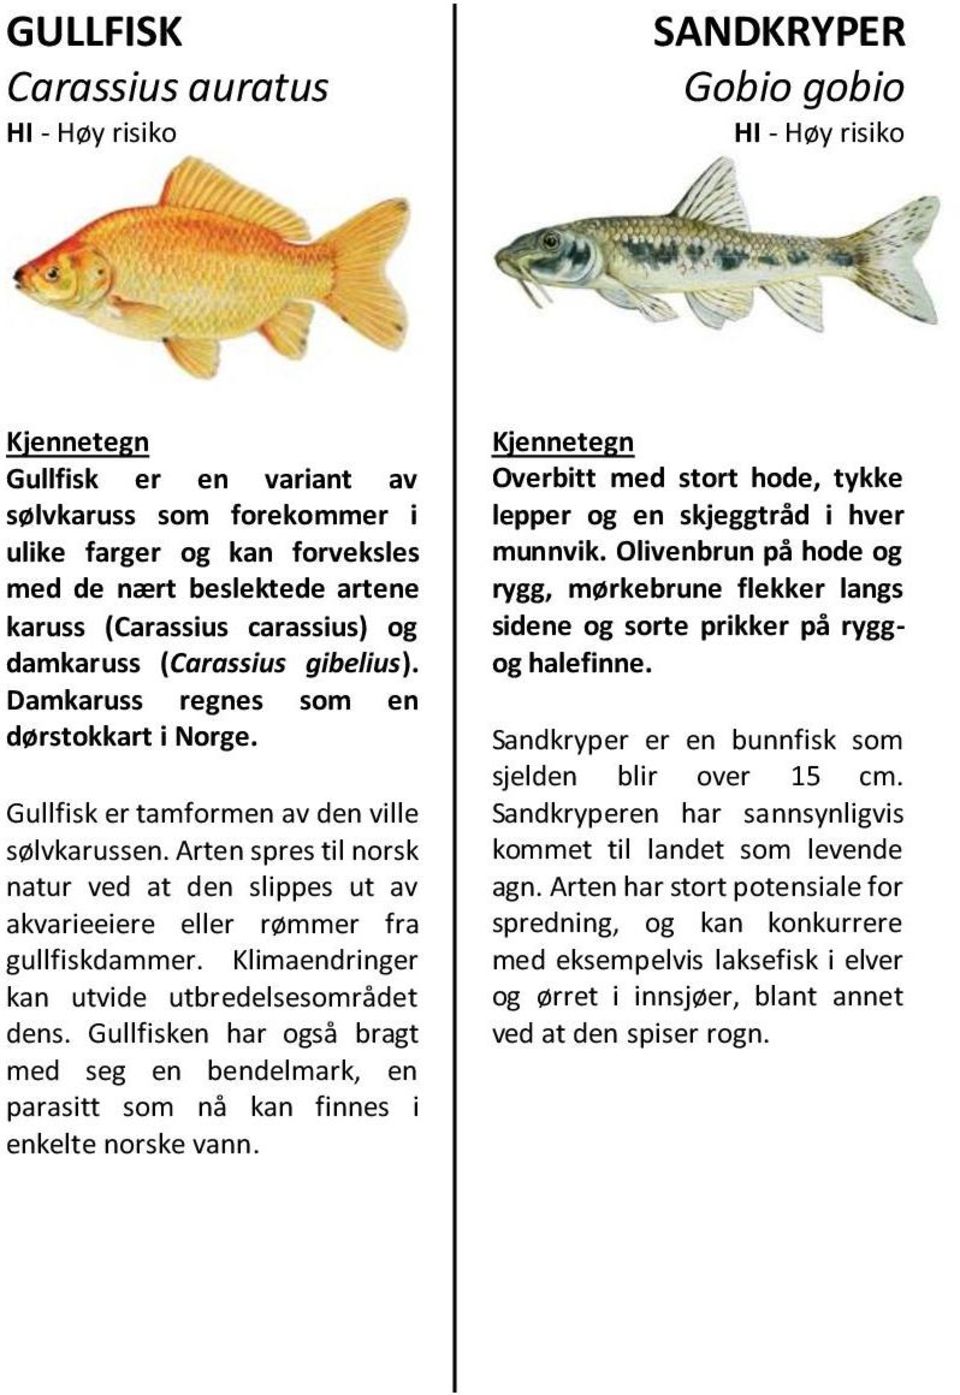 Arten spres til norsk natur ved at den slippes ut av akvarieeiere eller rømmer fra gullfiskdammer. Klimaendringer kan utvide utbredelsesområdet dens.